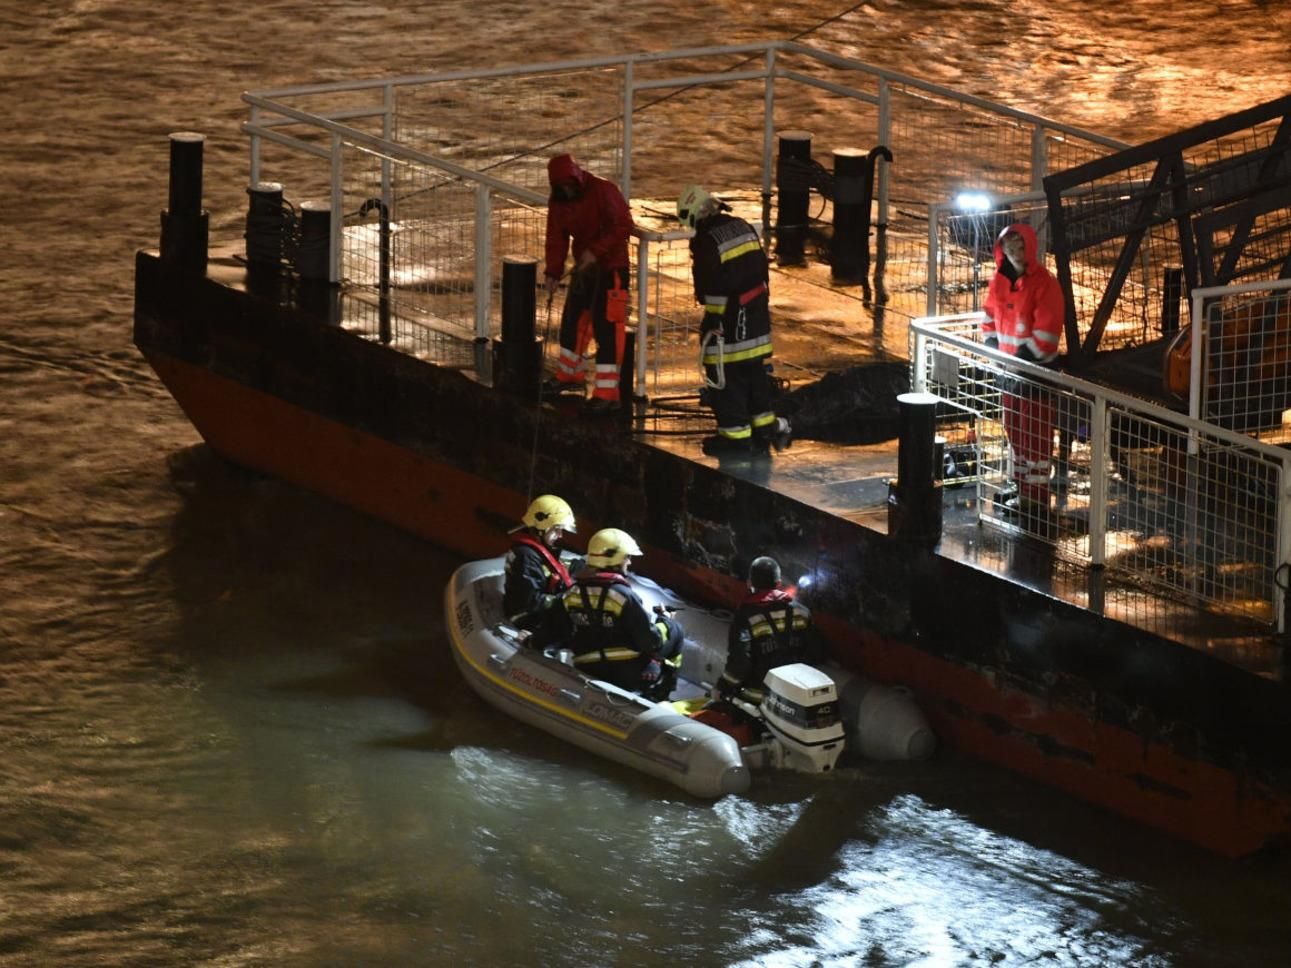  У Будапешті затонув катер з туристами - відео аварії судна 29 травня 2019